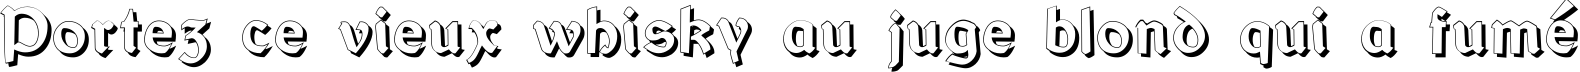 Пример написания шрифтом Bretagne Gaelic Shadow текста на французском